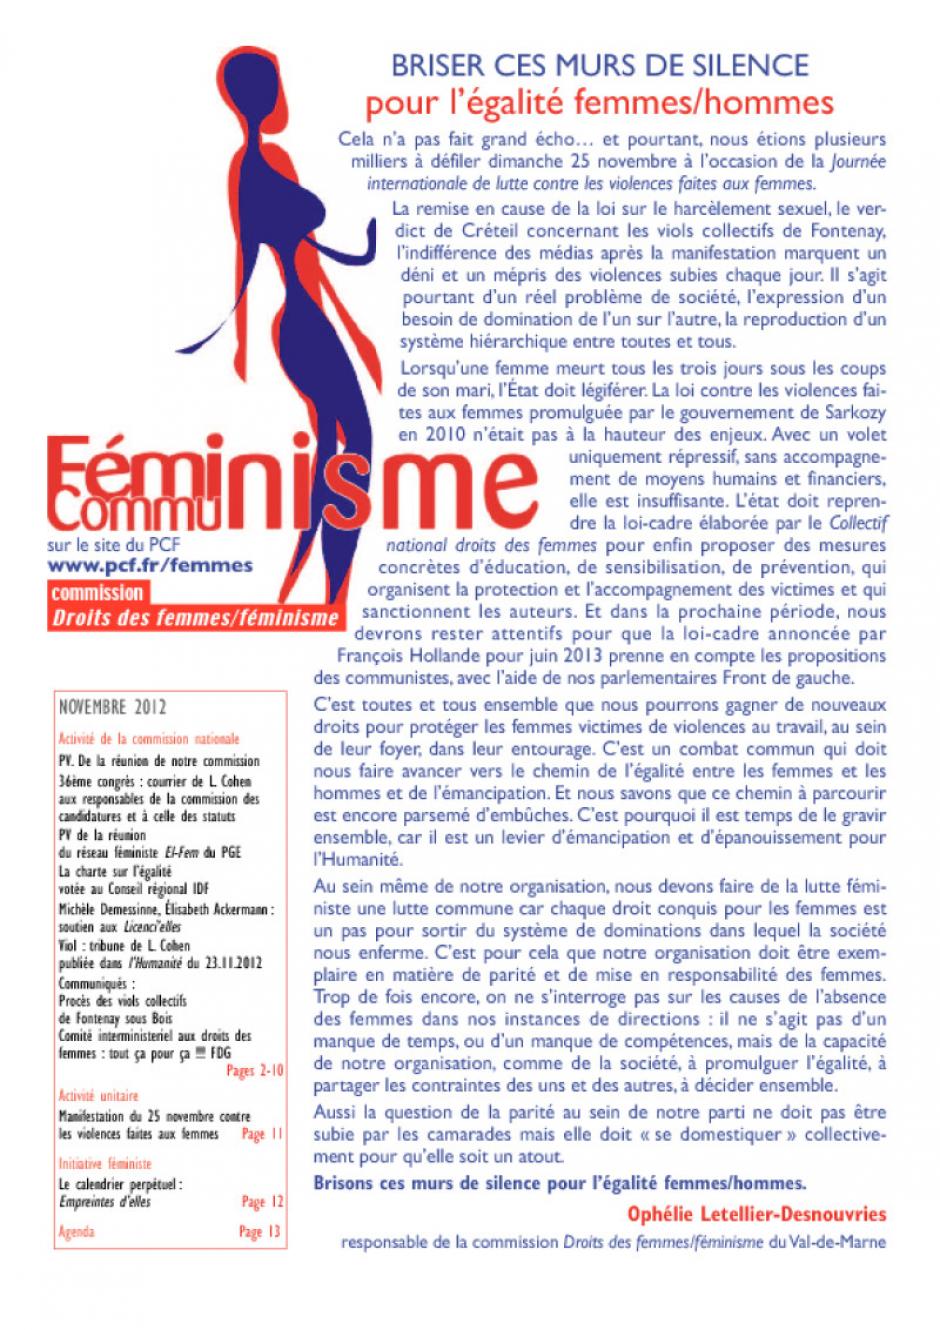 COMMUNISTES FEMINISTES - BULLETIN NOVEMBRE 2012